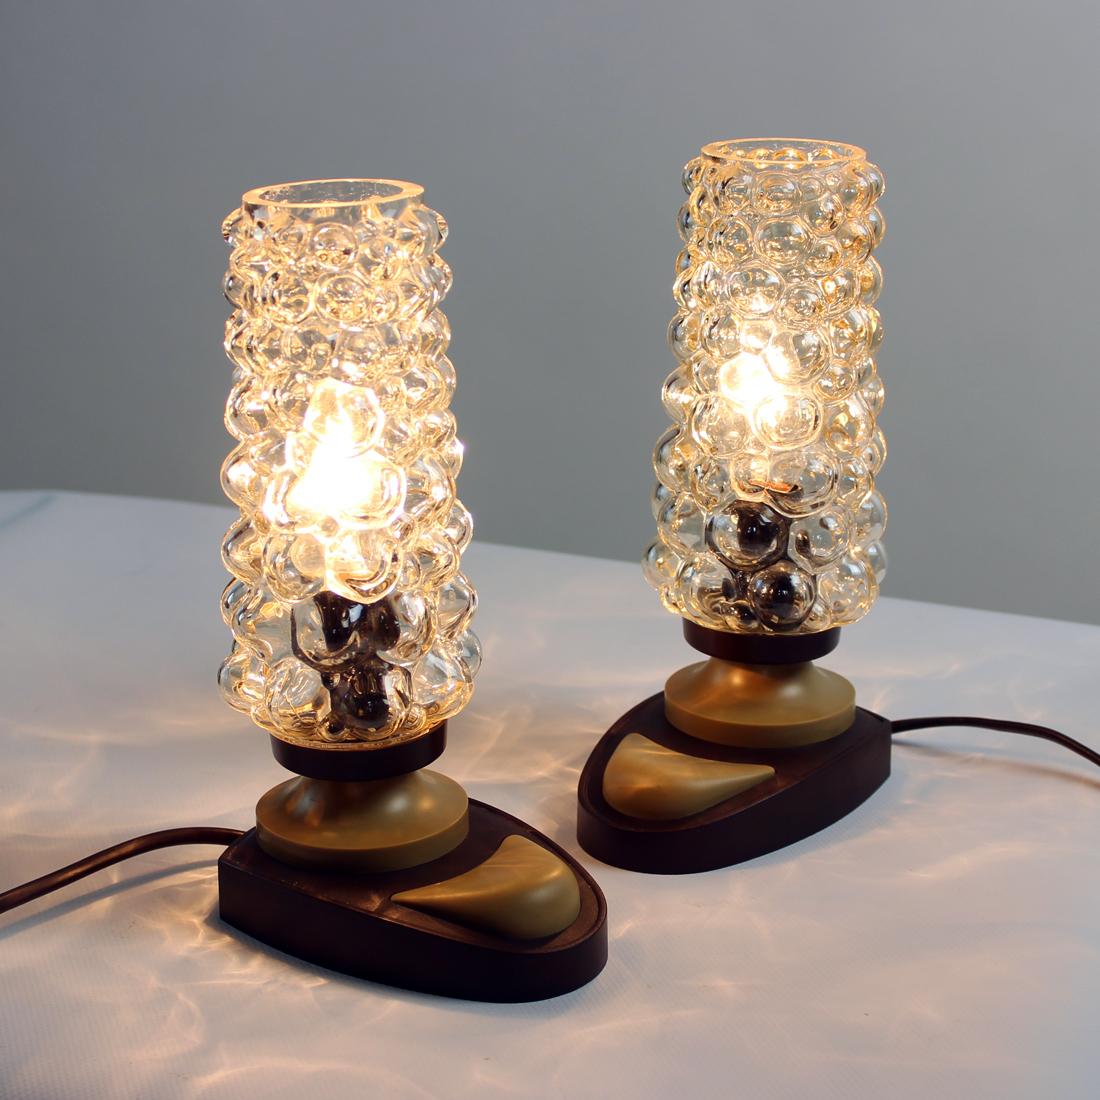 Ce sont de superbes lampes de table ! Produit en Tchécoslovaquie dans les années 1960 par la société Orion. Les lampes montrent le style typique de l'ère spatiale dans le design tchécoslovaque influencé par la recherche sur l'espace de l'époque. La